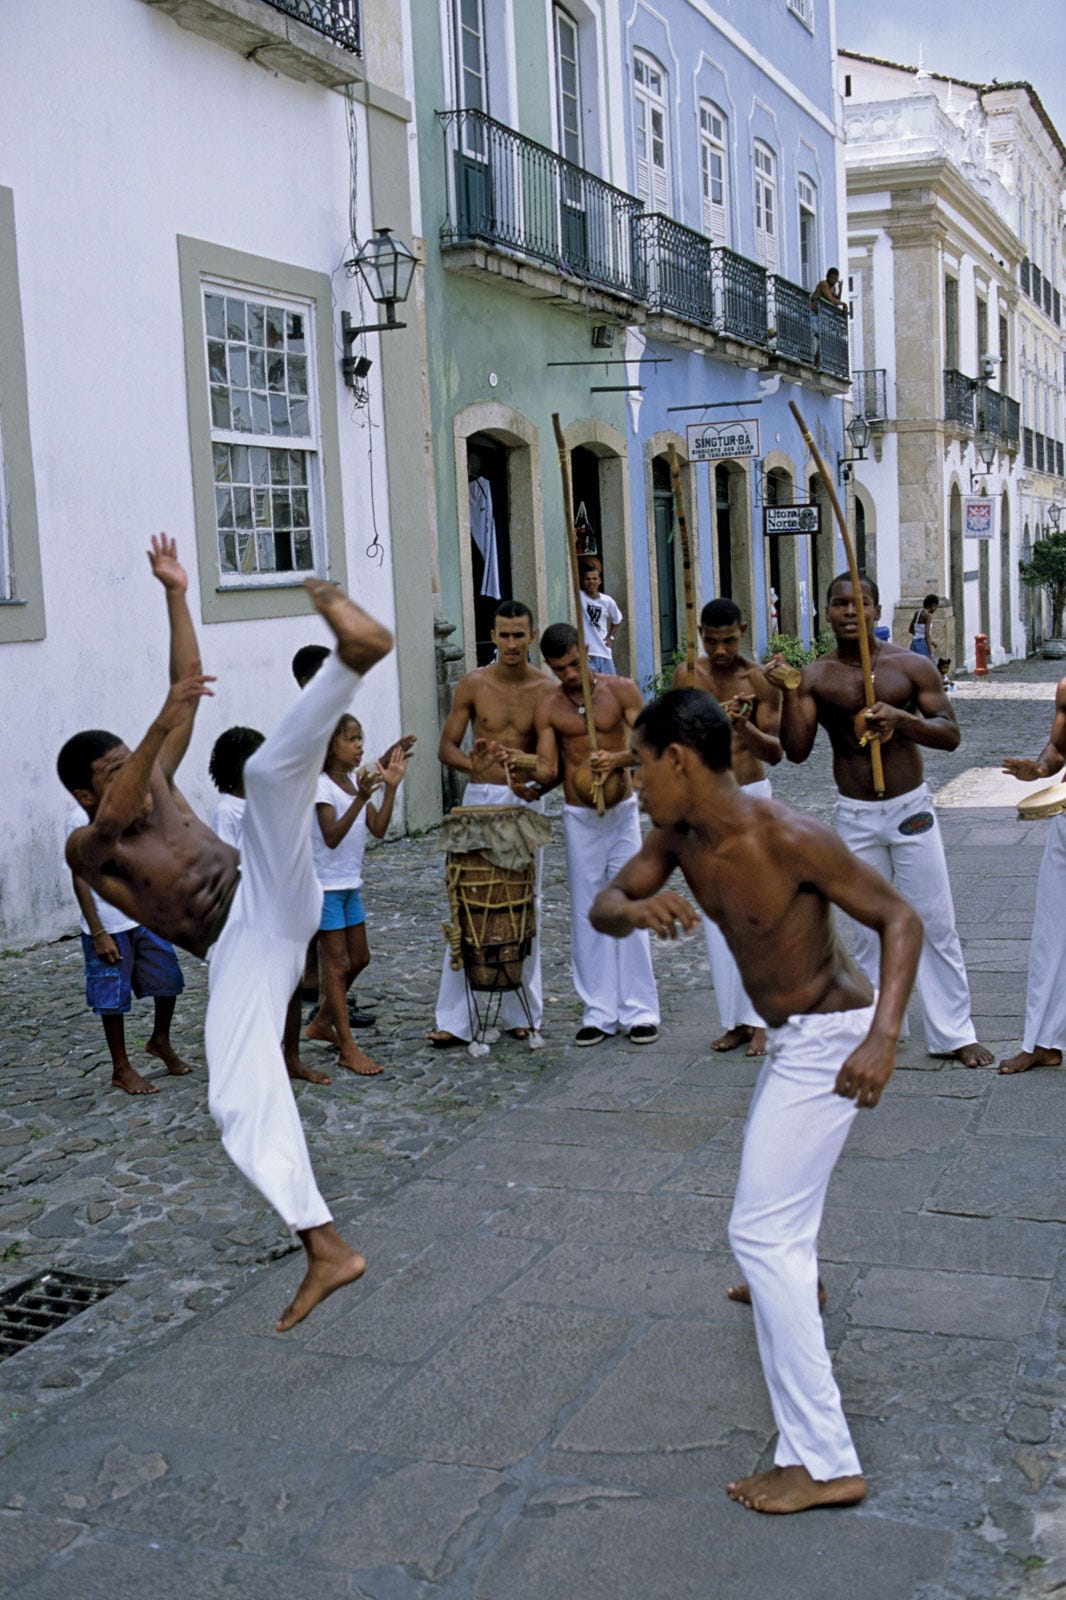 Stream capoeira internacional  Listen to Musicas de Capoeira